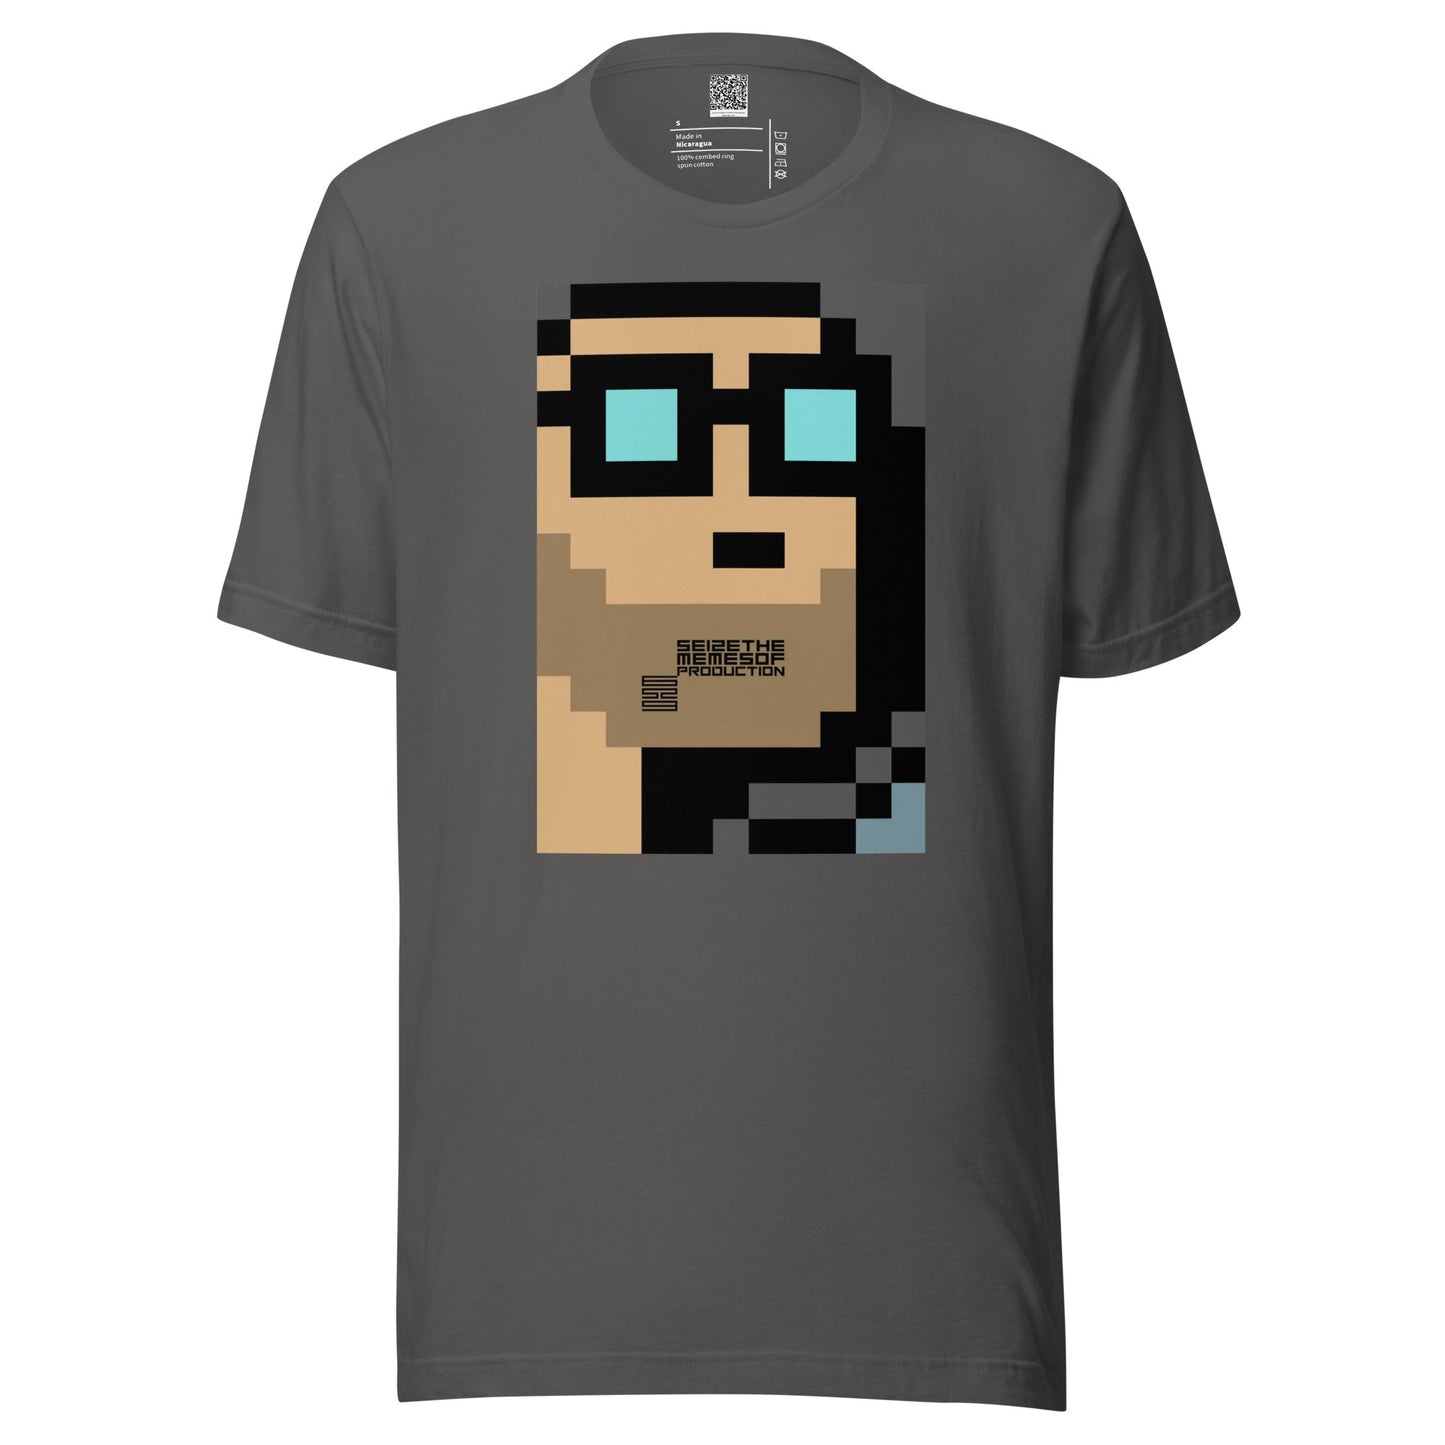 Unisex t-shirt - 6529Seizing